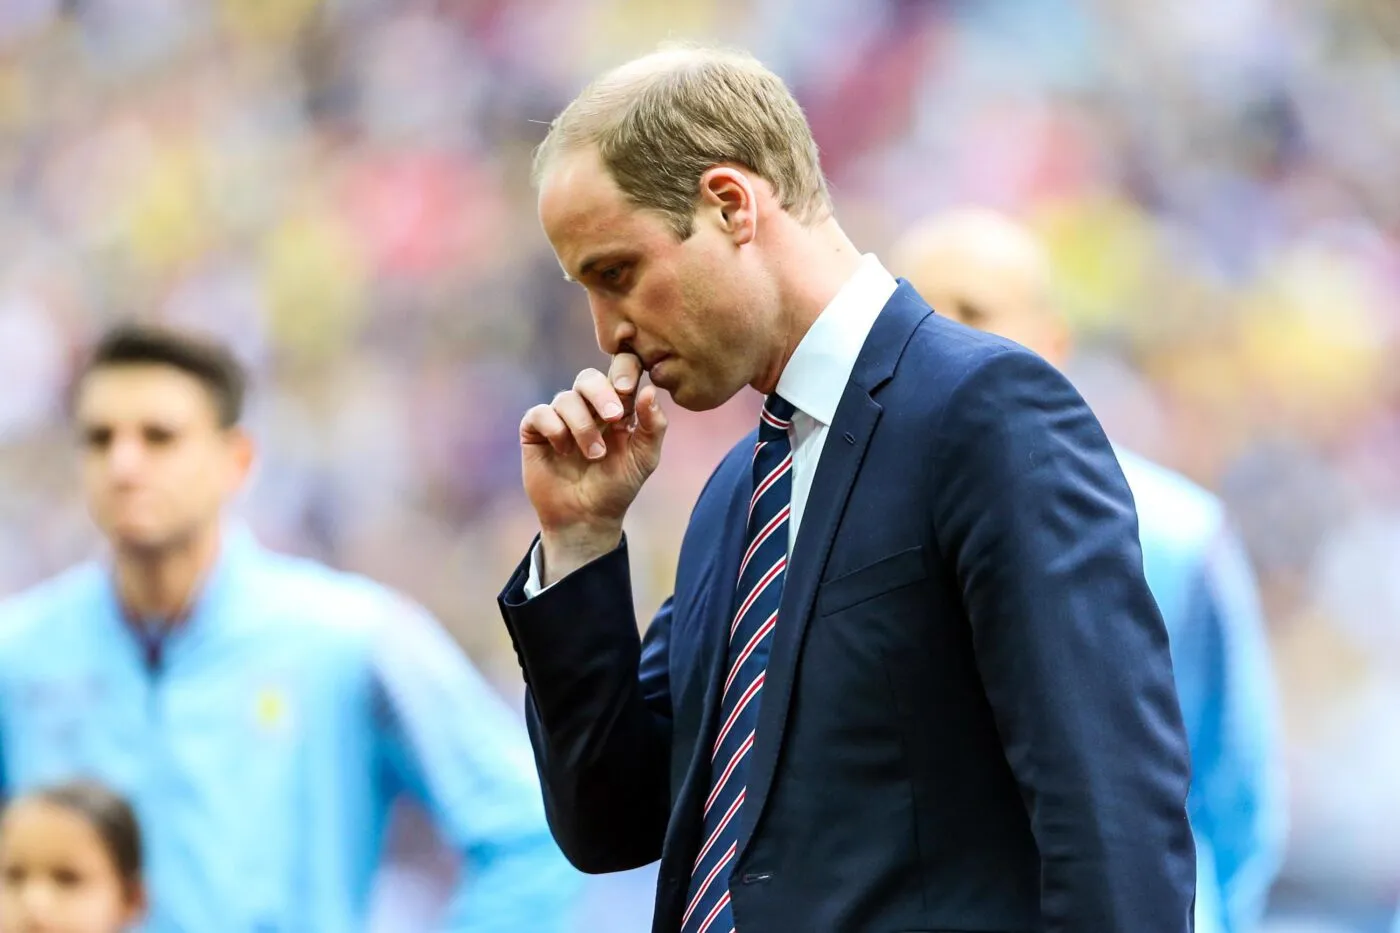 Le prince William félicite Aston Villa après sa qualification en Ligue des champions